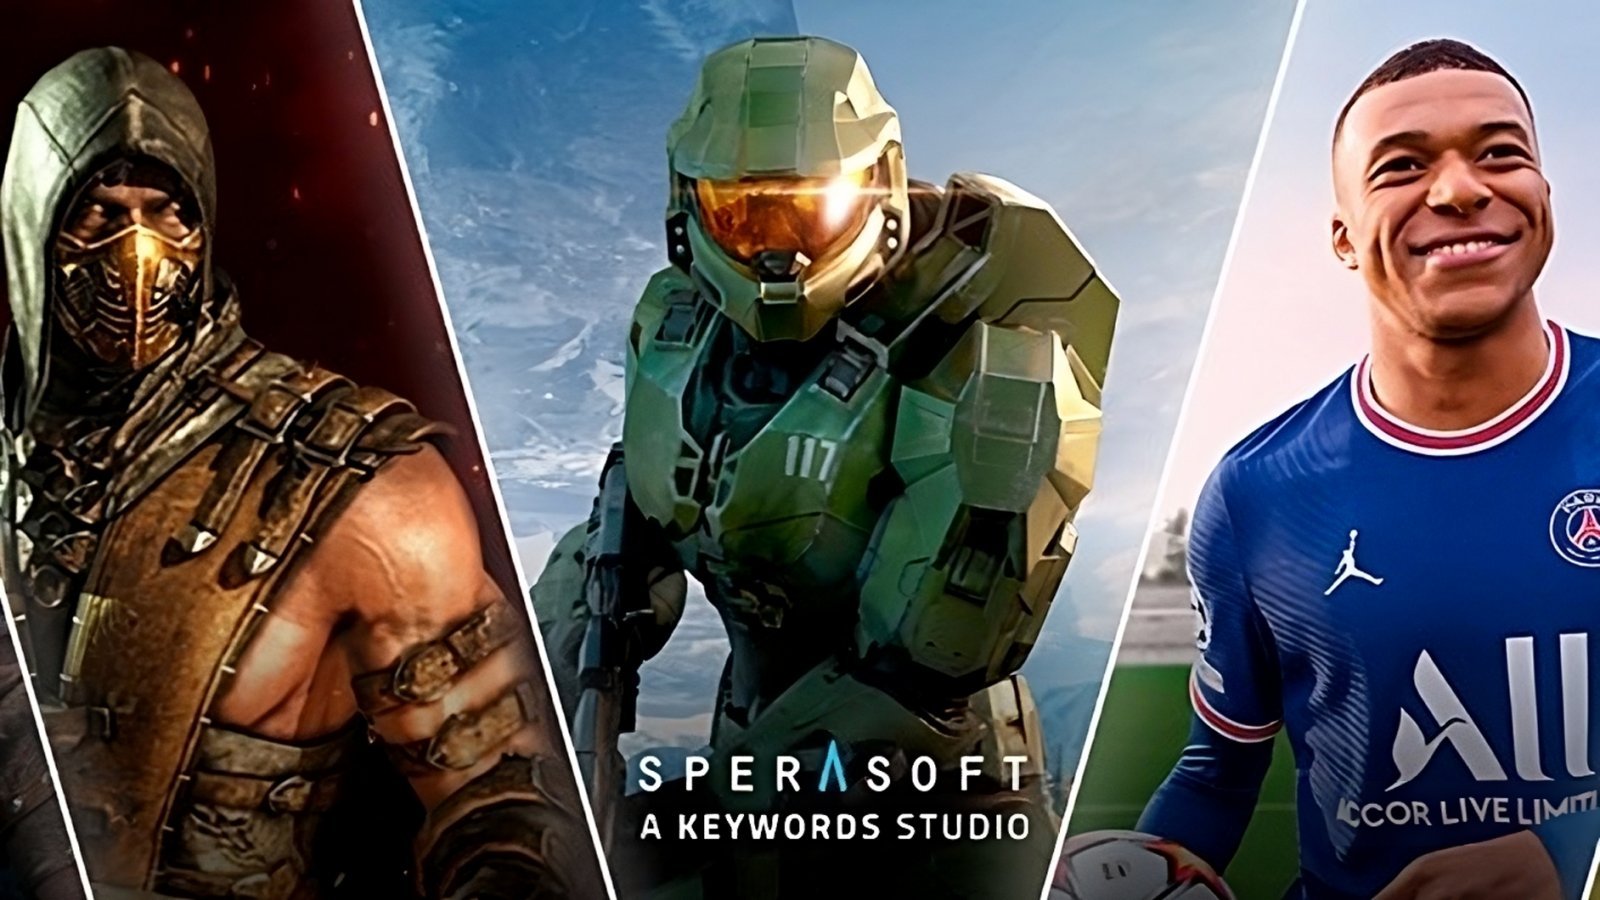 Sperasoft lavora a un action GDR tripla A con UE5, ha co-sviluppato Halo Infinite e Assassin's Creed